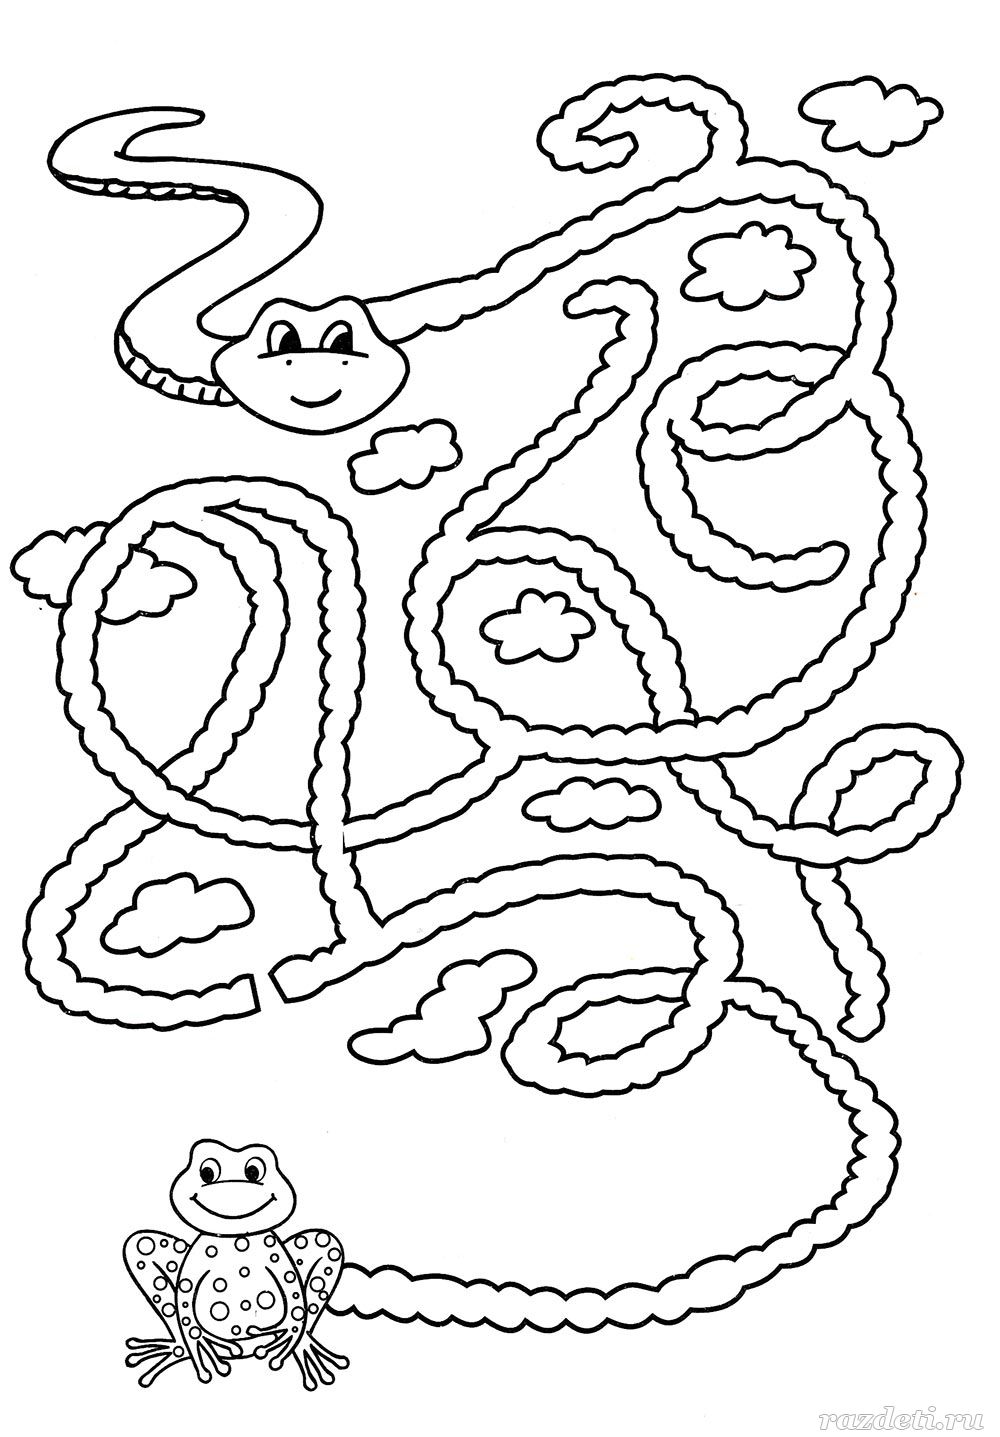 Задания про змей. Змея задания для детей. Лабиринты для детей. Лабиринты обводилки для детей. Лабиринт змейка для детей.